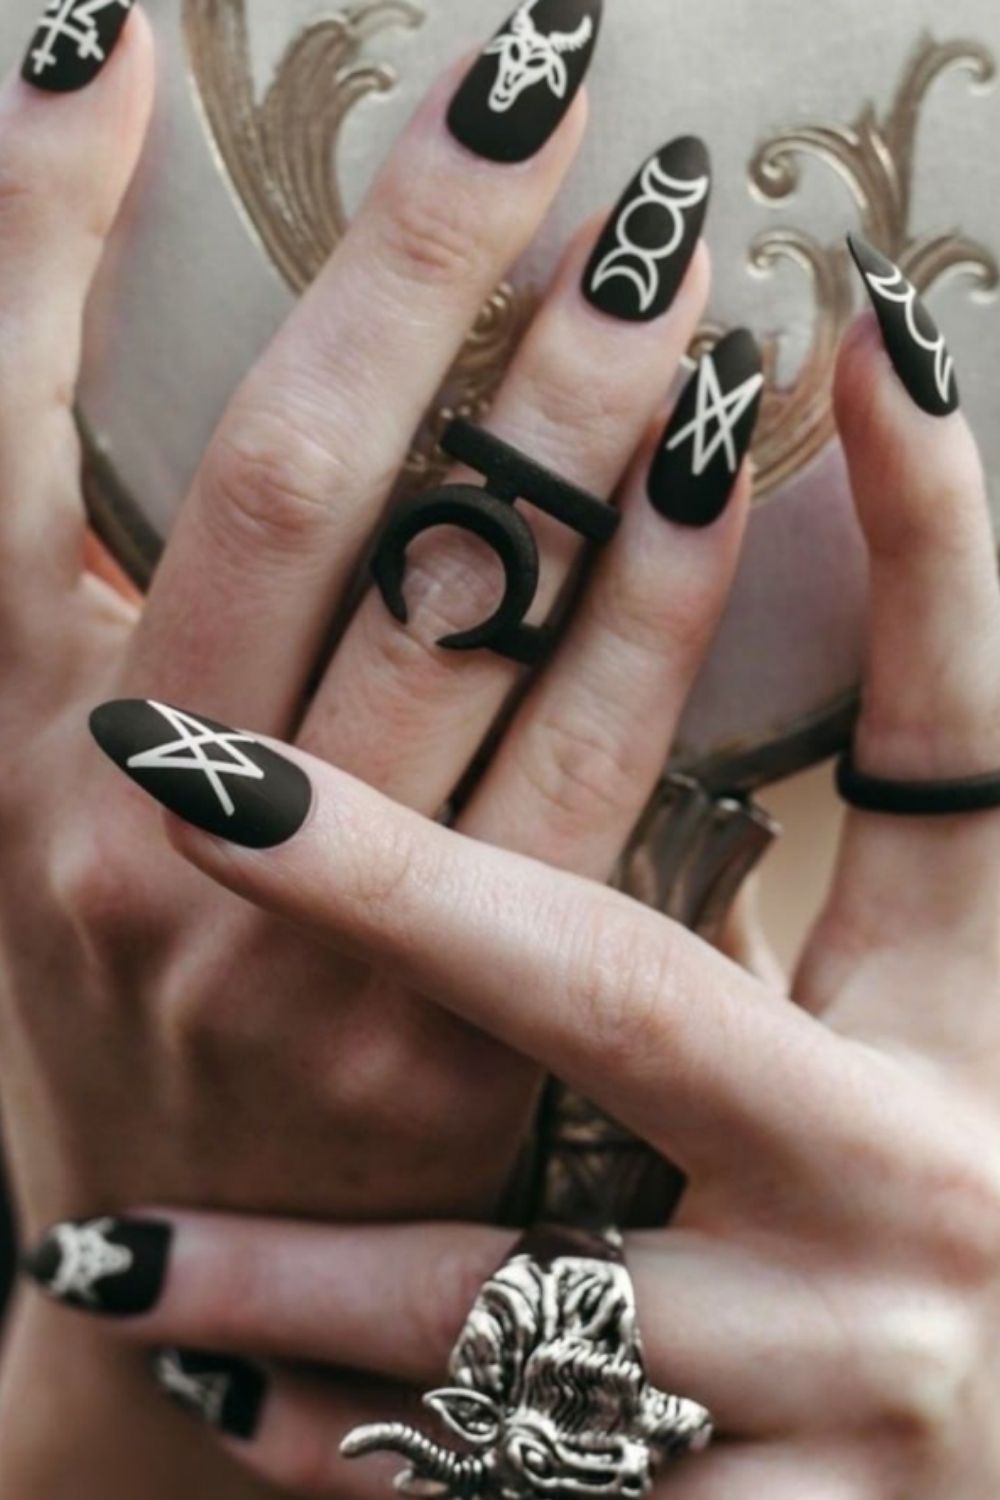 Black acrylic nails | the fall season nails color 2021